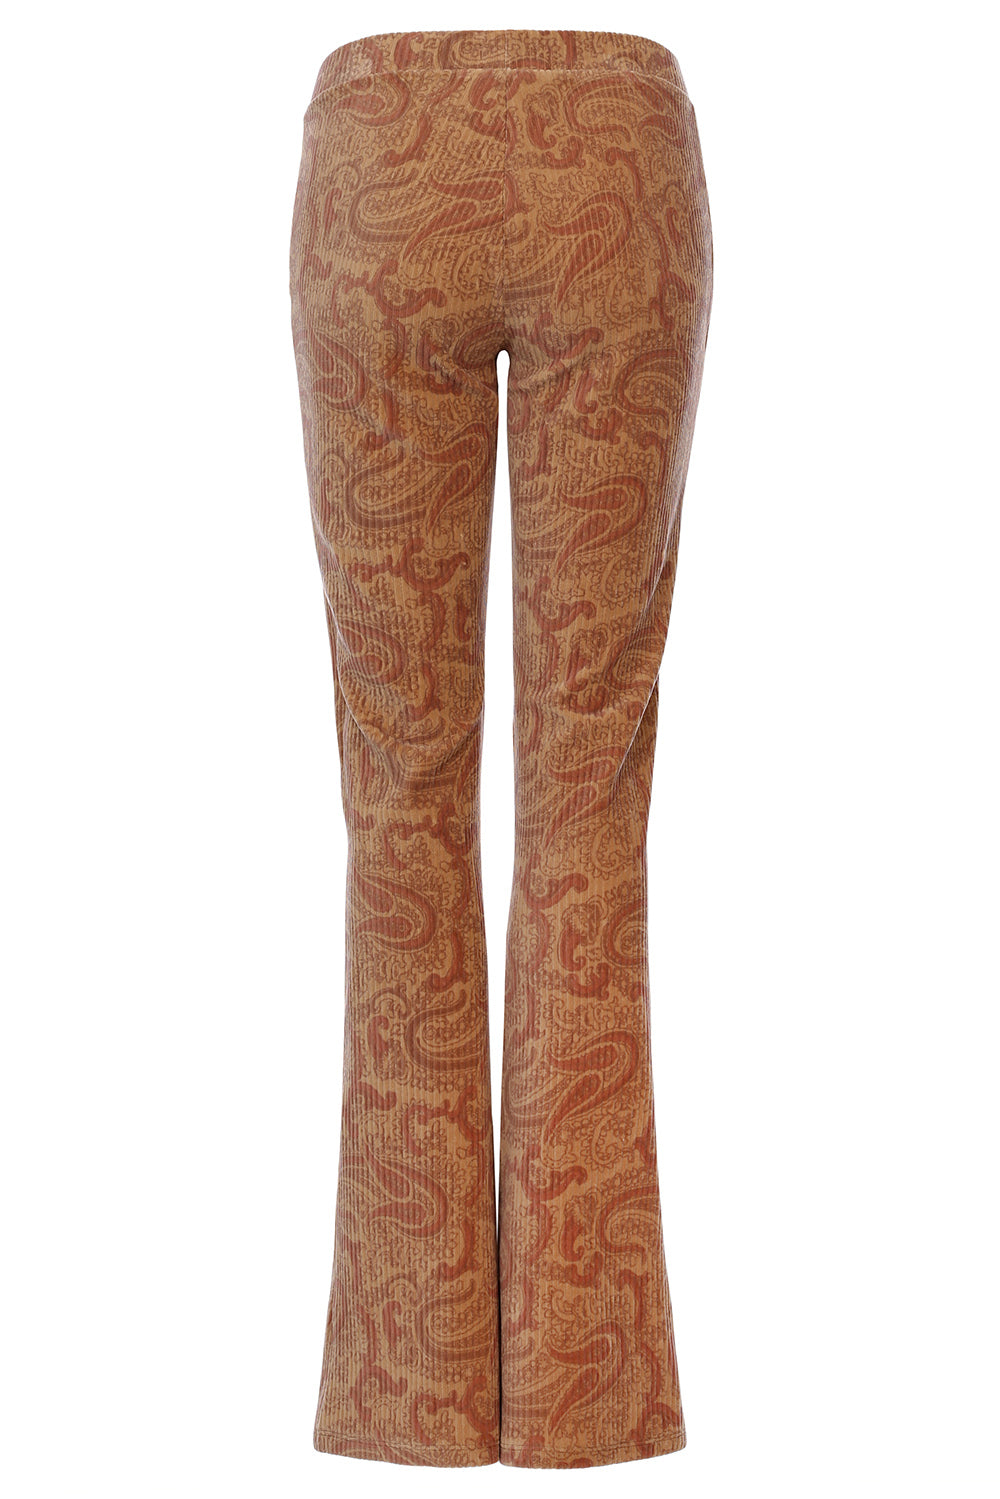 Meisjes Paisley Rib Flare Pants van LOOXS Little & Me in de kleur Vintage paisley in maat L.